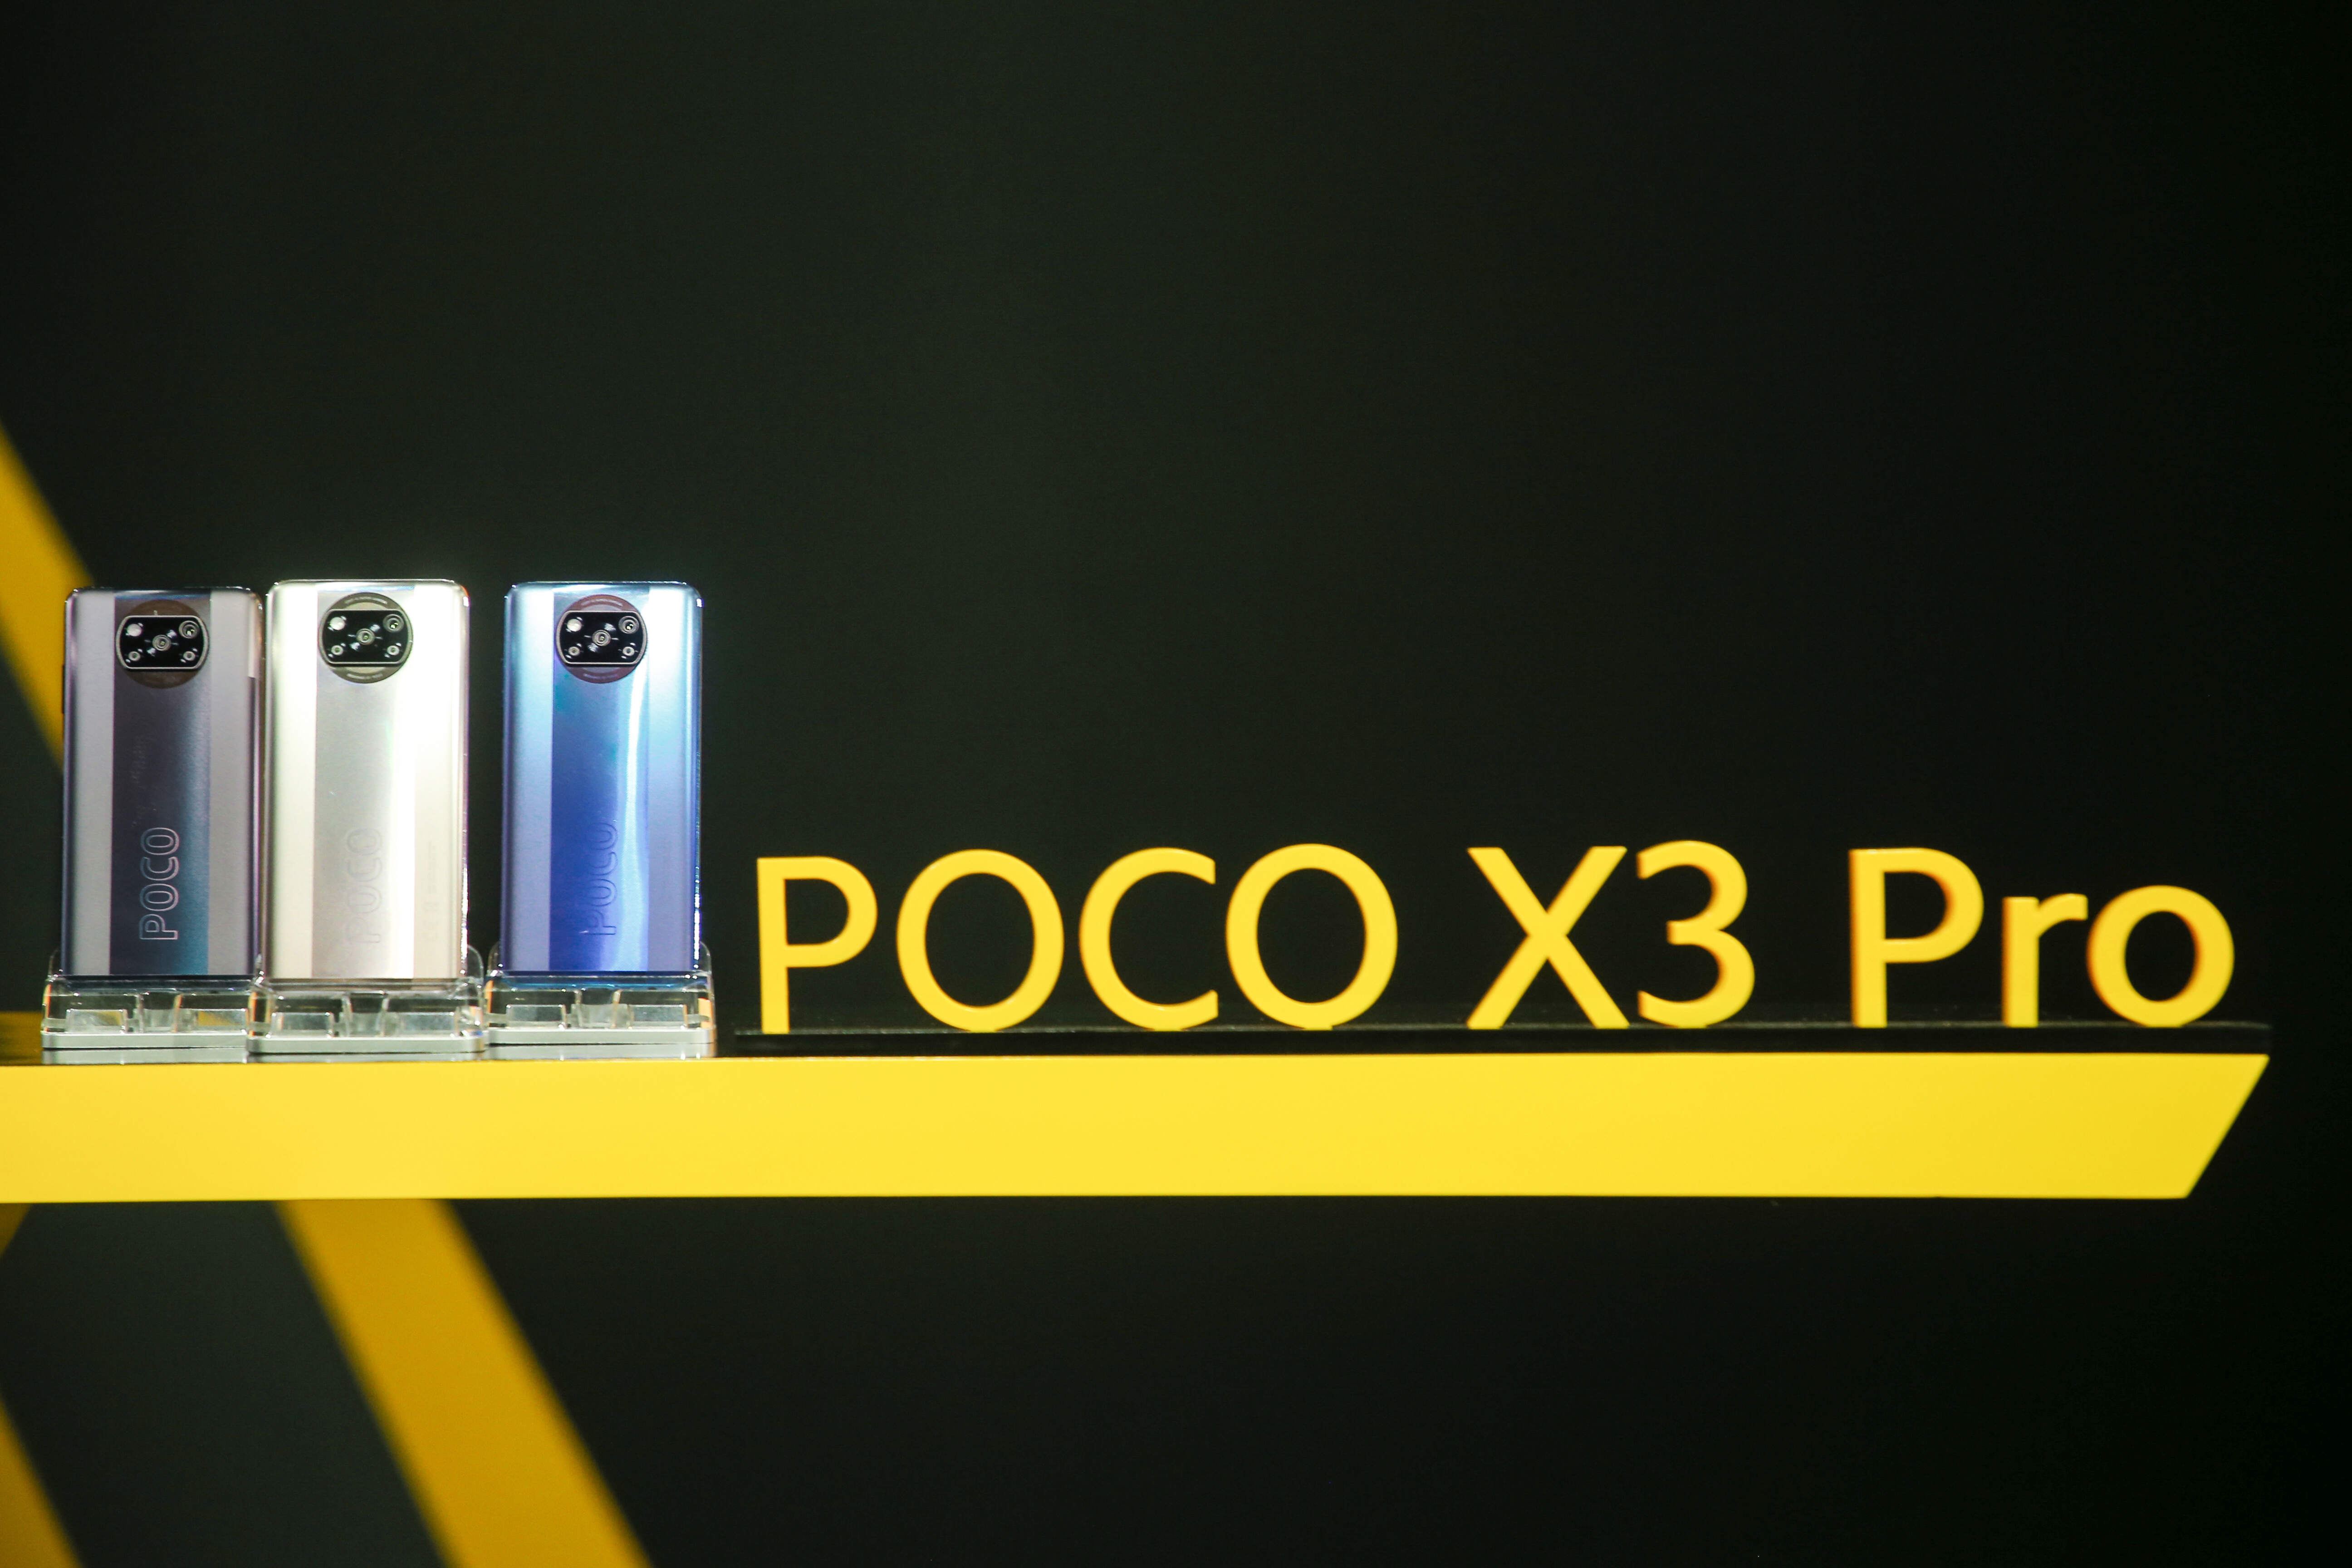 สมาร์ทโฟนแฟลกชิปสองรุ่นใหม่ล่าสุด POCO F3 ที่สุดแห่งพลังความร้ายกาจ และ POCO X3 Pro สเปคแรงโดนใจกว่าเดิม มากกว่าที่คุณต้องการ